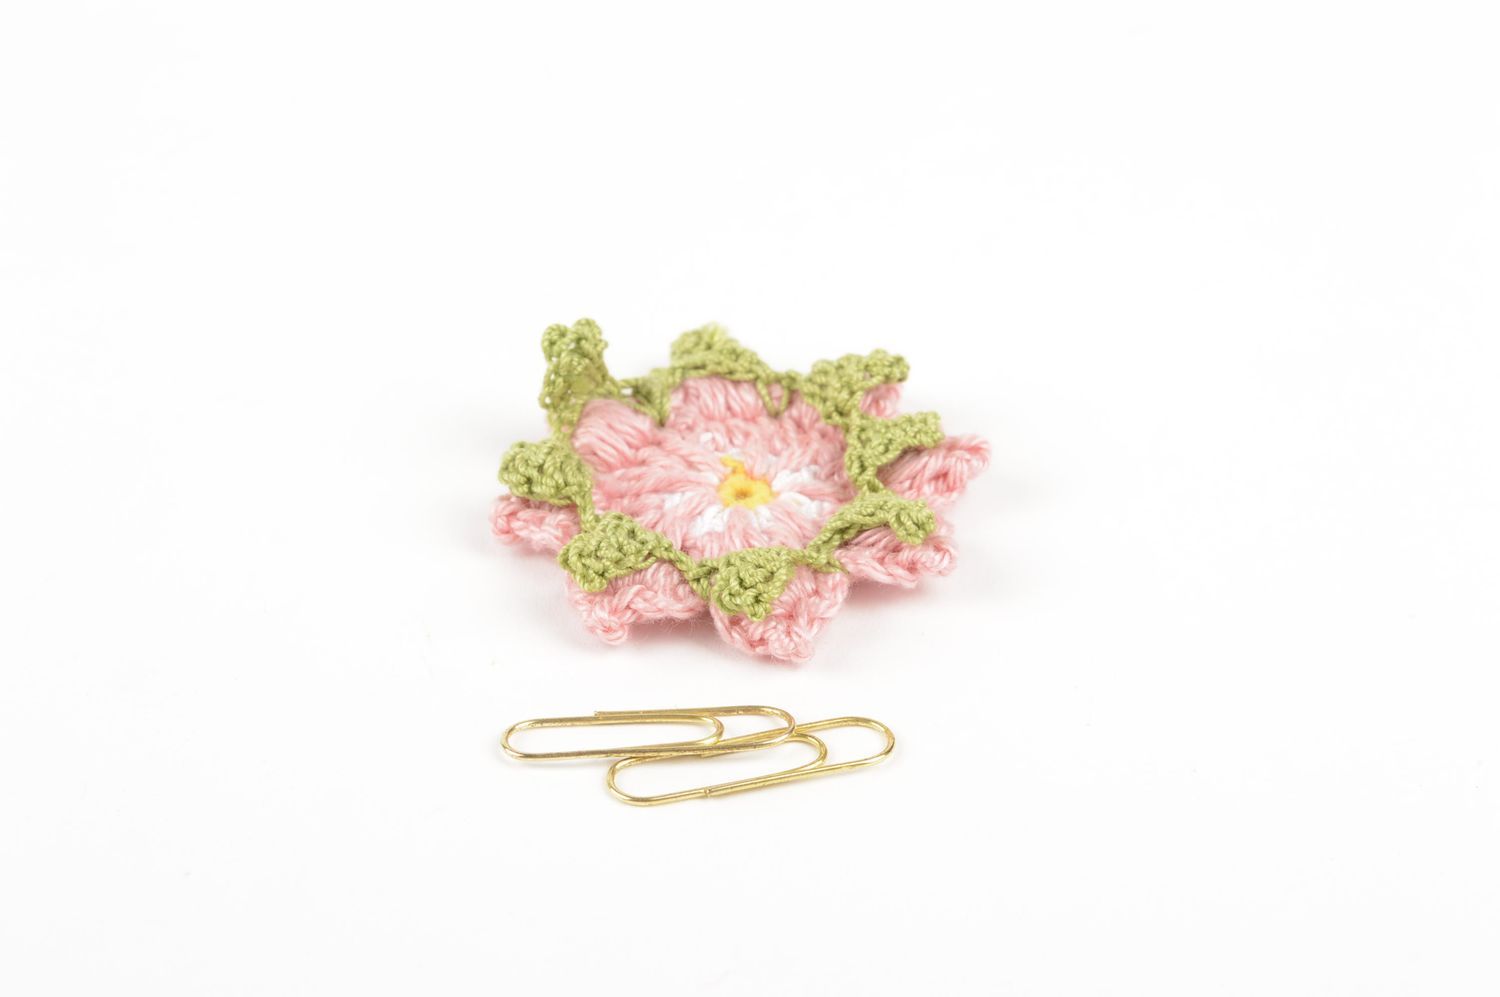 Фурнитура для бижутерии handmade розовый цветок из ниток заготовка для броши фото 5